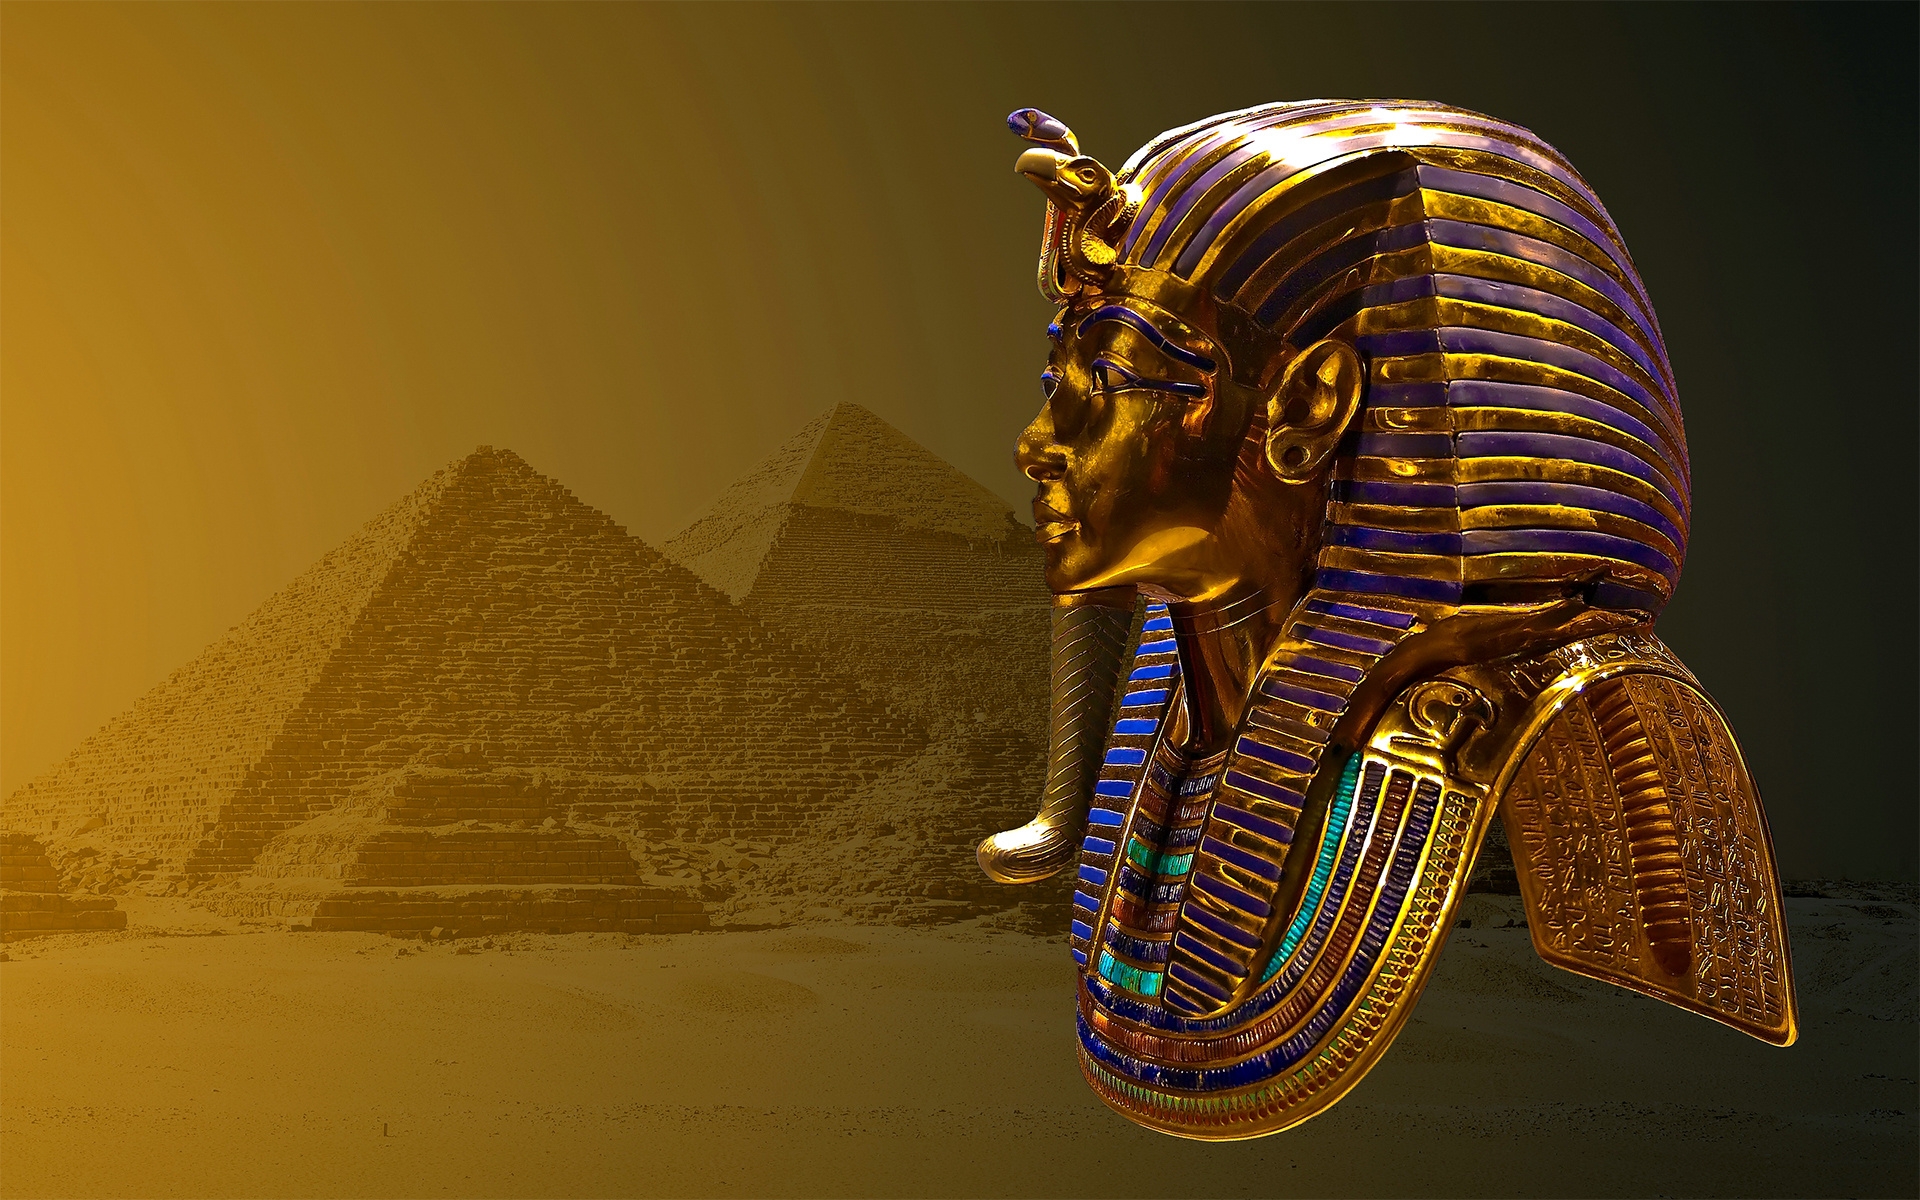 pharaoh game download